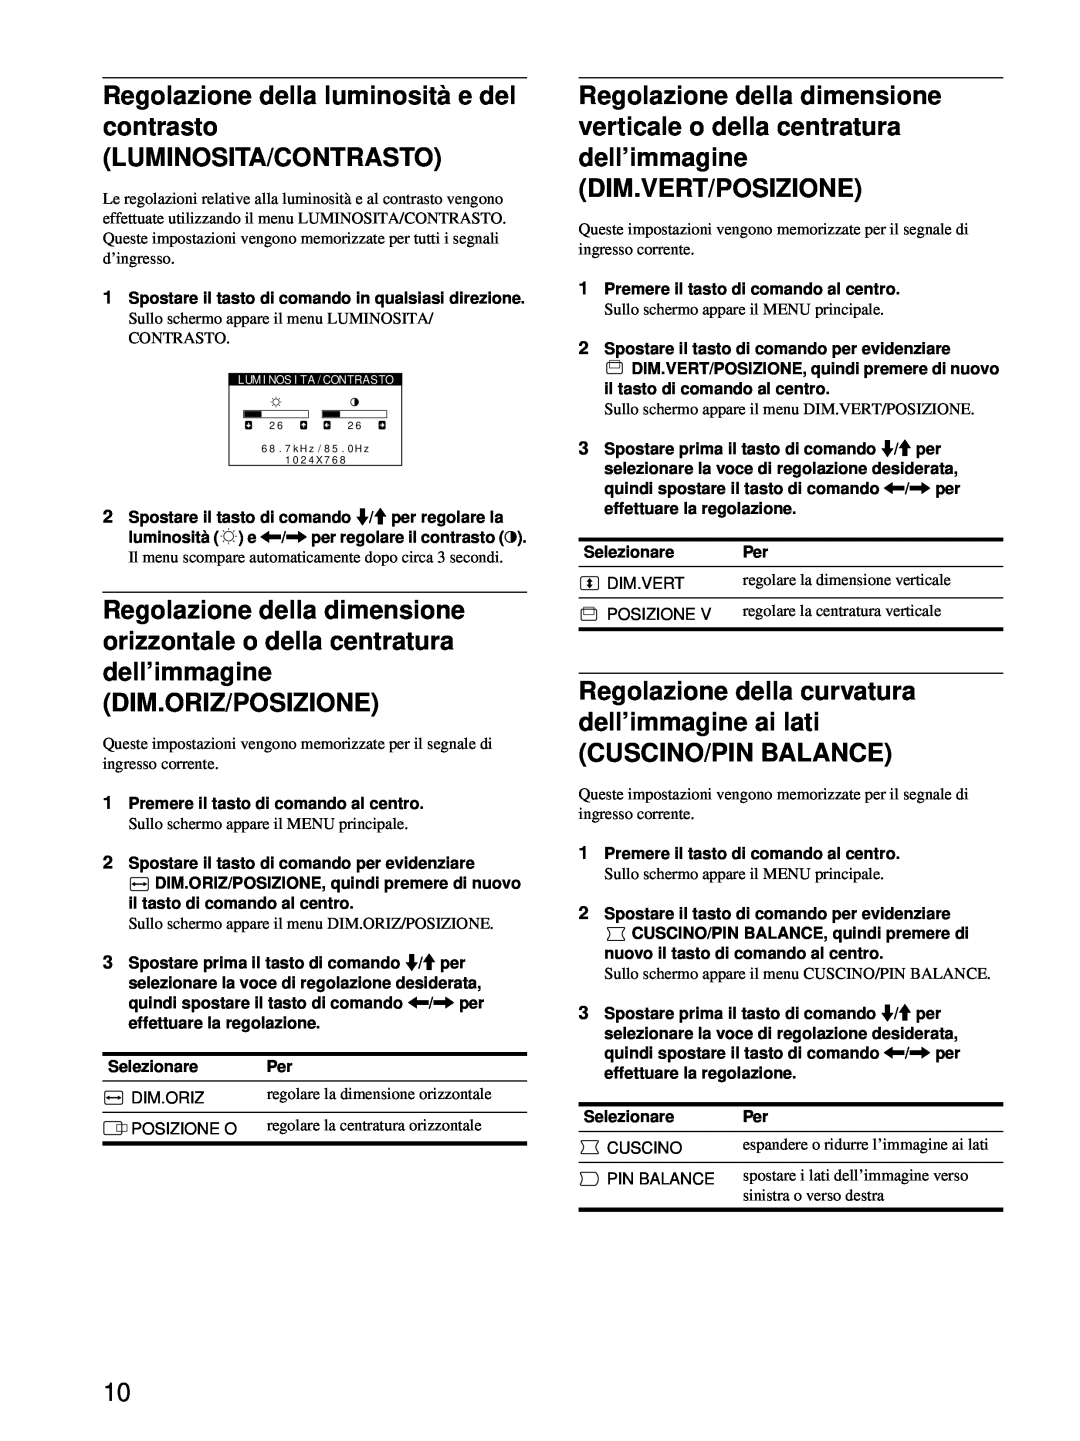 Sony HMD-A220 operating instructions Regolazione della luminosità e del contrasto LUMINOSITA/CONTRASTO, Cuscino/Pin Balance 